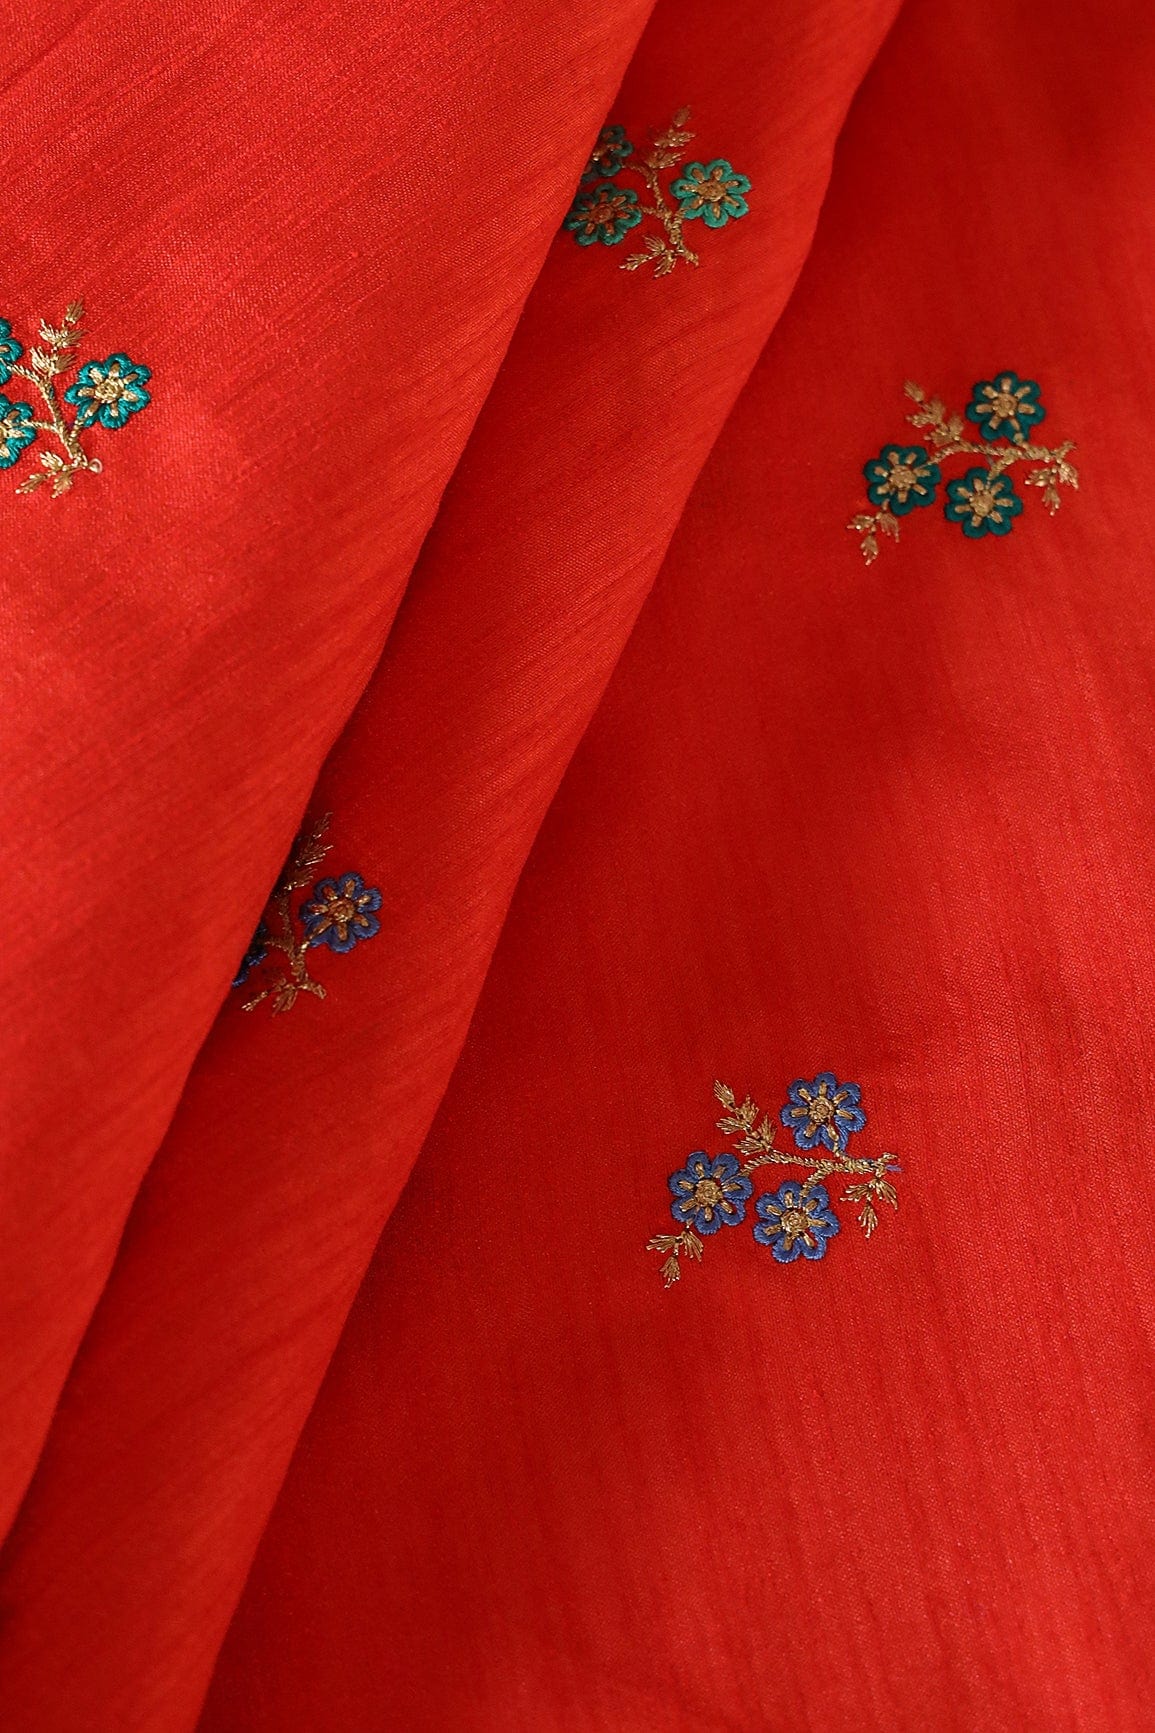 doeraa Banarasi Fabrics Multi Thread With Gold Zari Small Floral Embroidery Work On Orange Banglori Satin Fabric